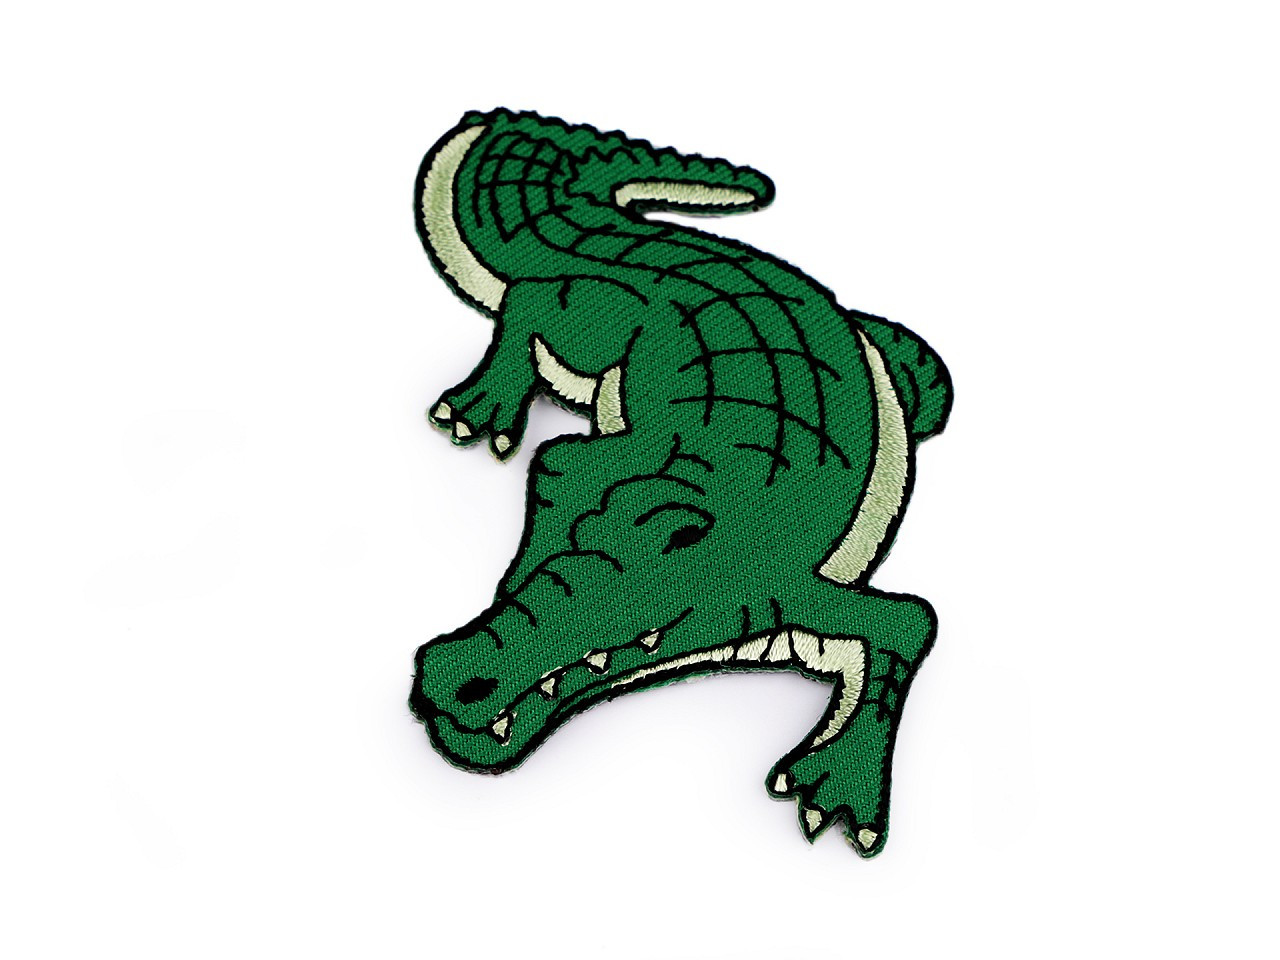 Nažehlovačka zvířata, barva 6 zelená pastelová krokodýl